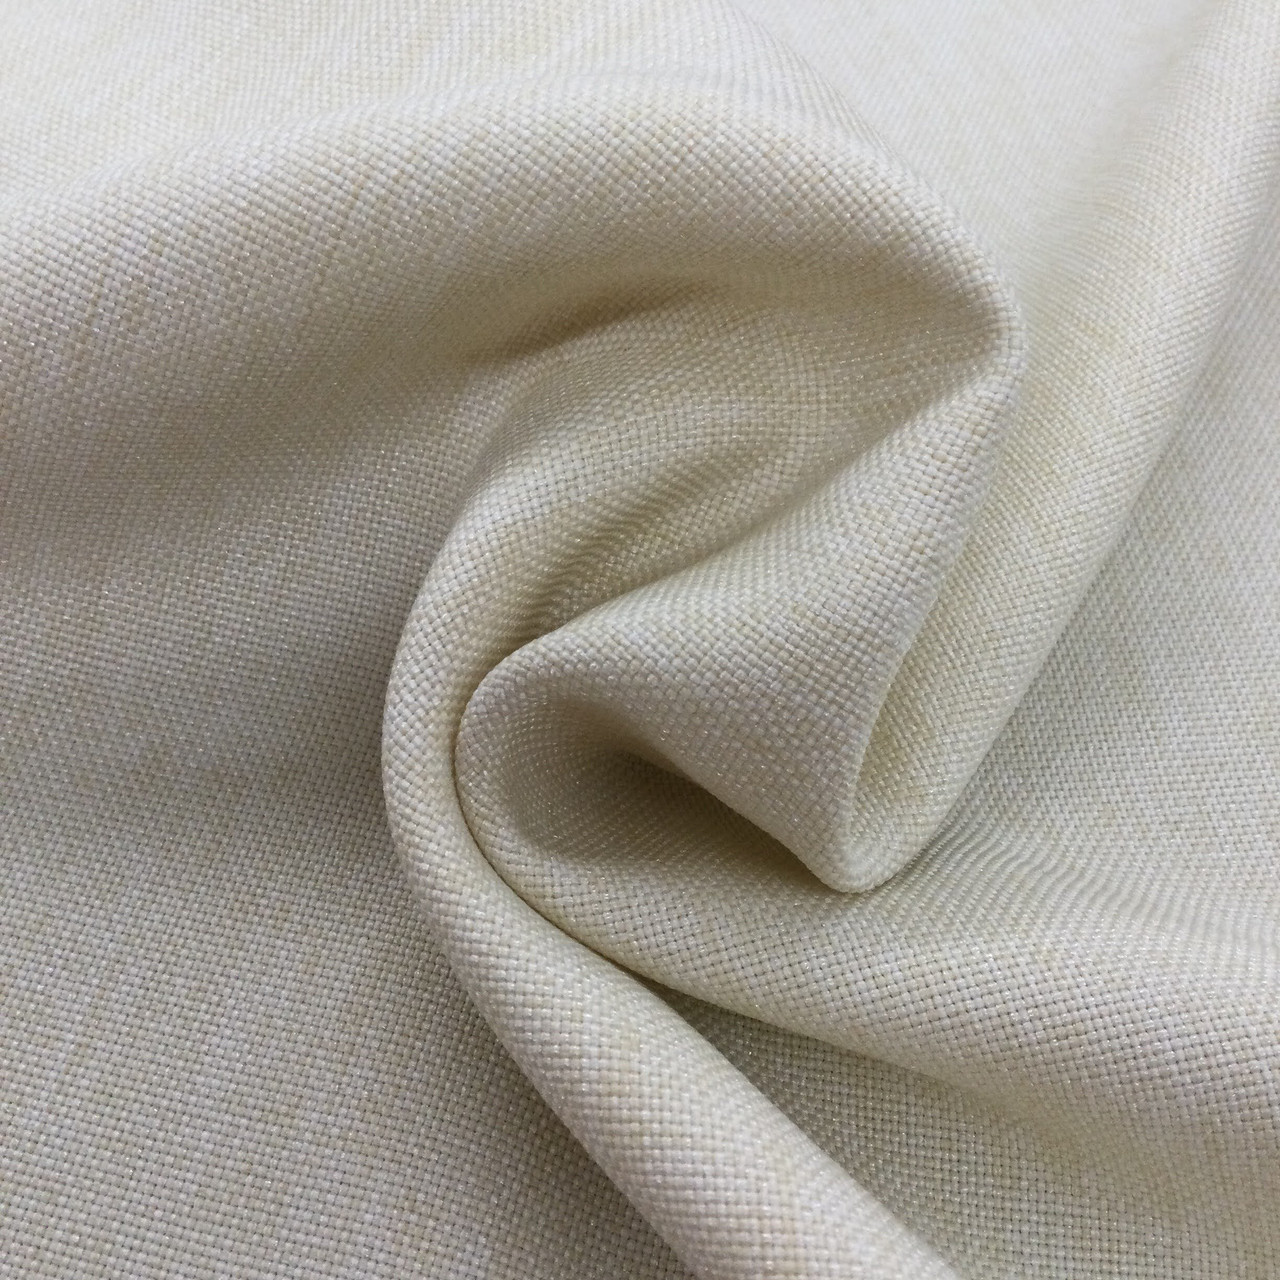 Gloo Fabric Stiffener White